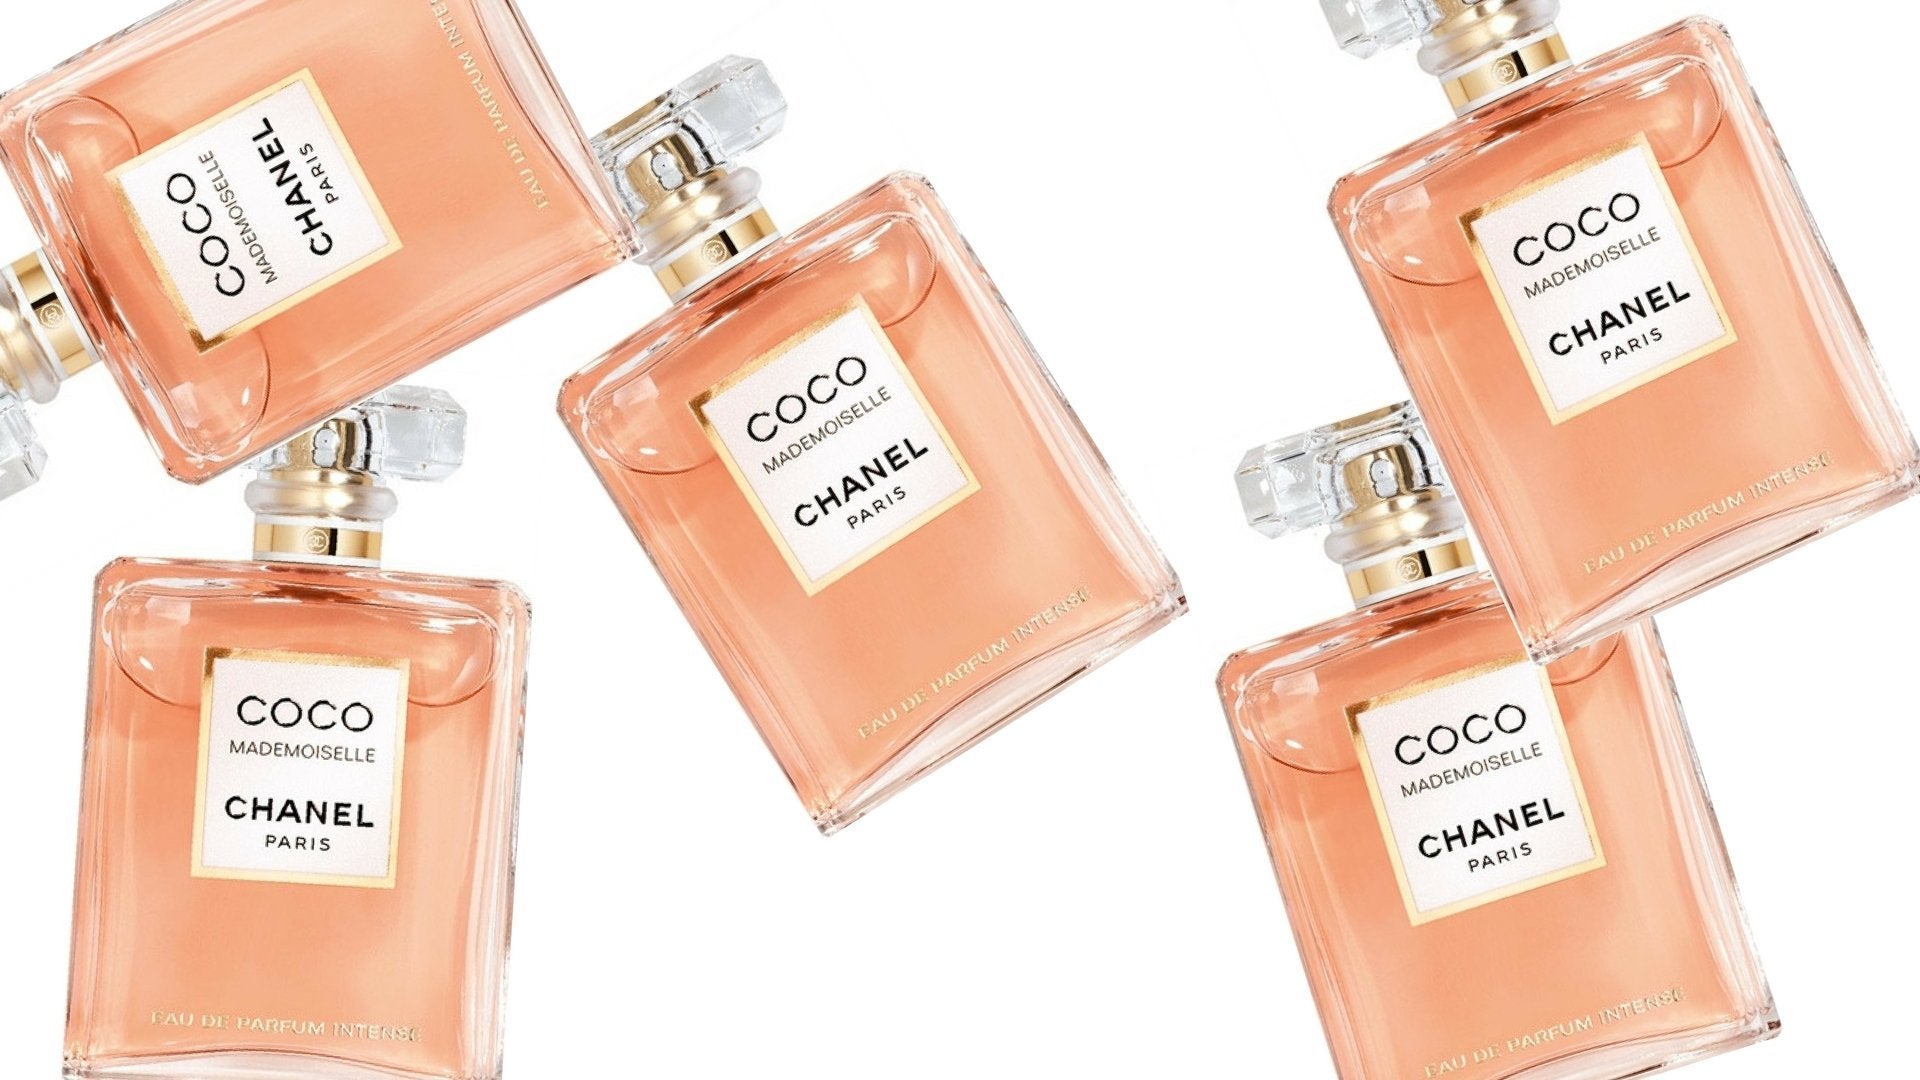 Chanel Coco Mademoiselle Fresh Deodorant Spray 3.4 Ounces 